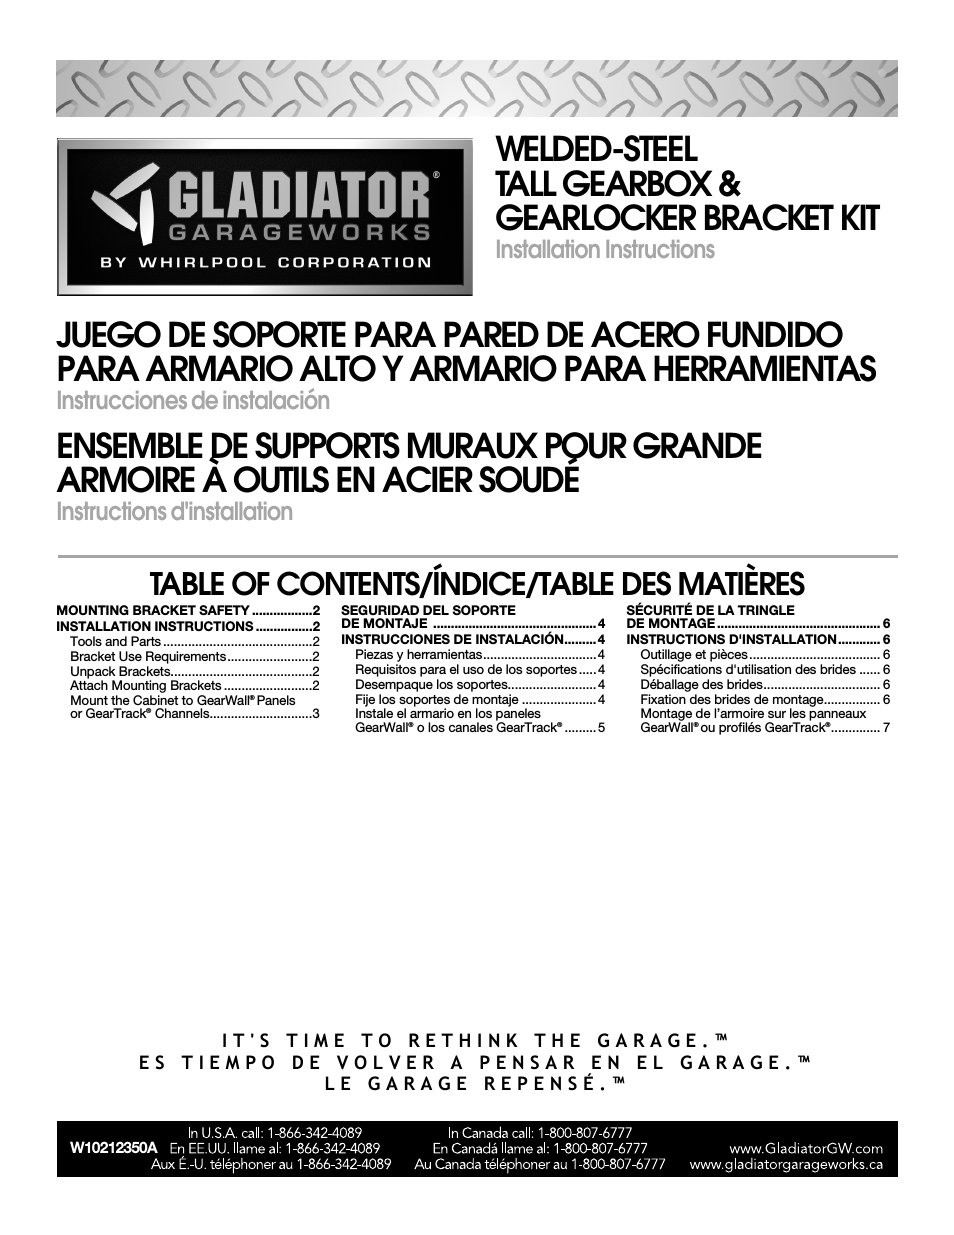 GABK301PRS Wall Bracket Kit for Tall GearBox and GearLocker